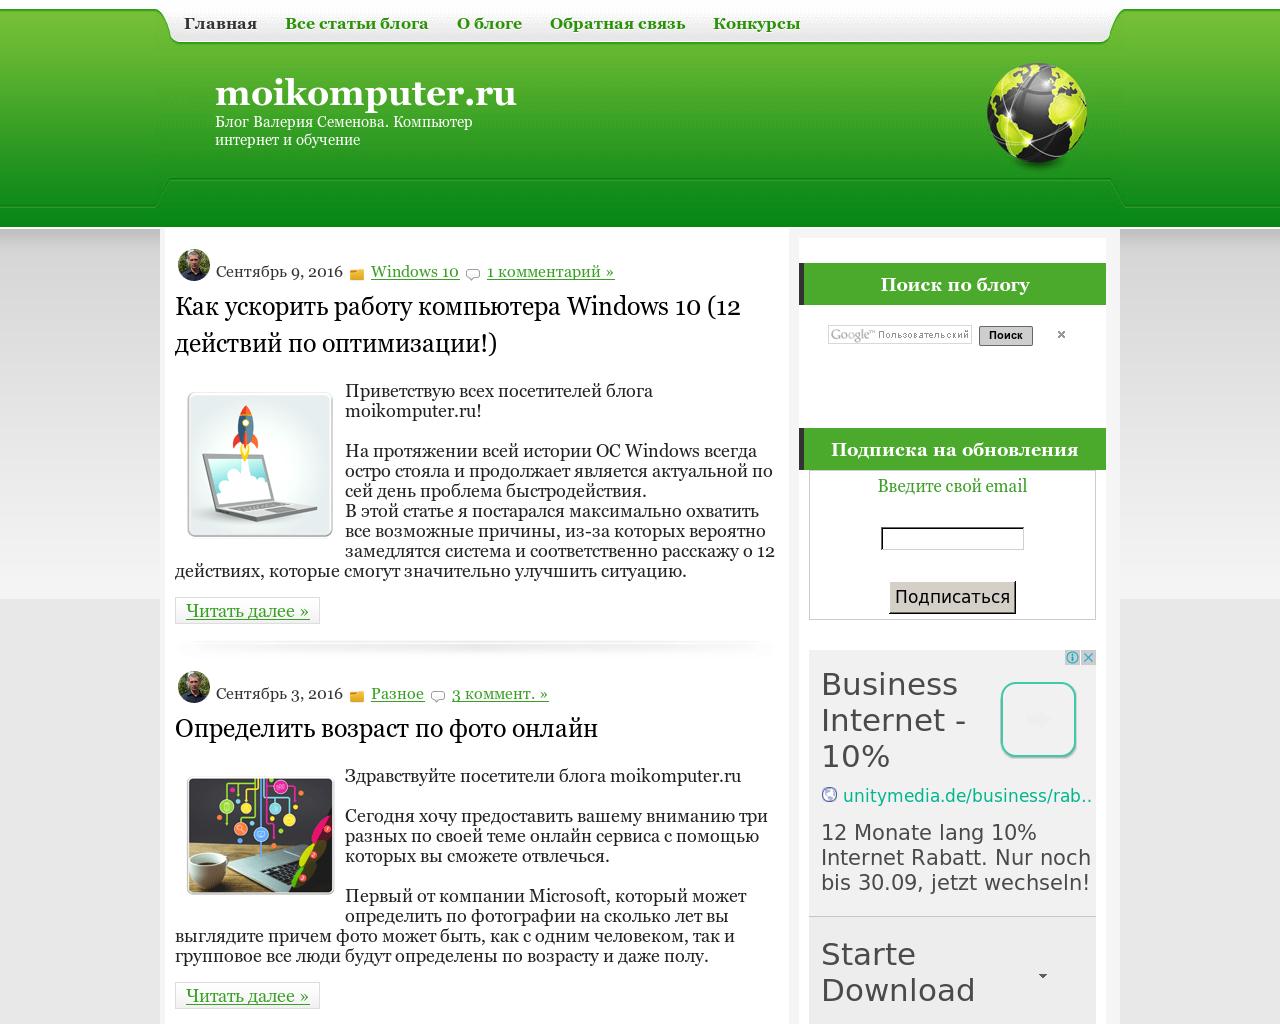 Изображение сайта moikomputer.ru в разрешении 1280x1024